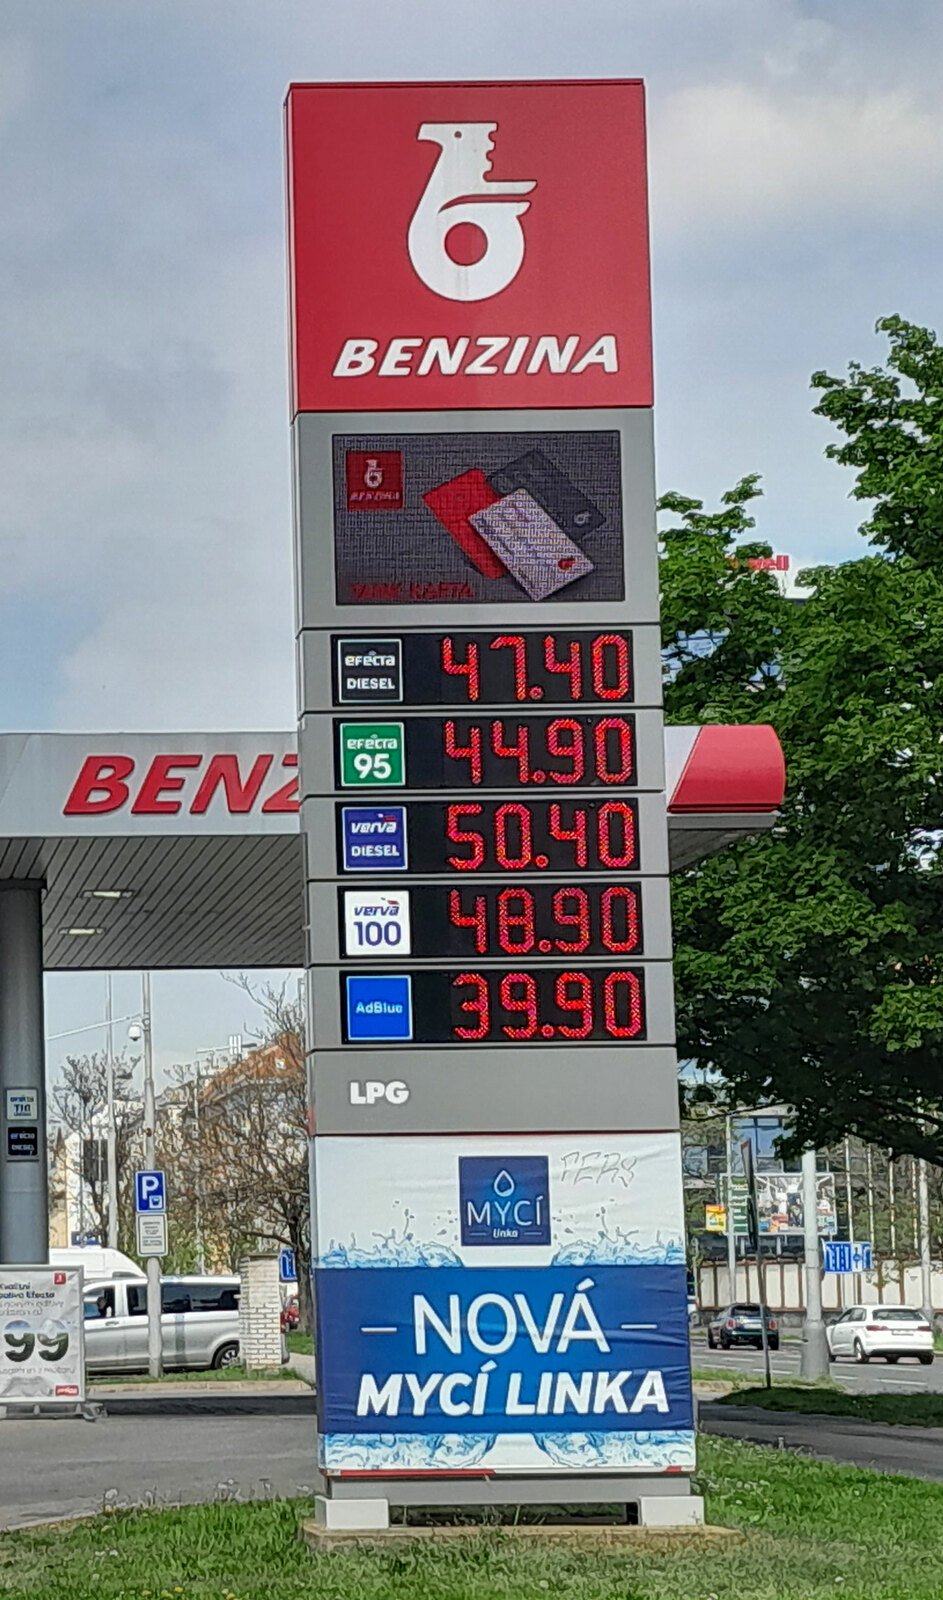 Květen 2022: Opačný stav cen paliv přinesla další globální krize v podobě konfliktu na Ukrajině. A tak si čeští motoristé od jara zvykají na ceny začínající čtyřkou.